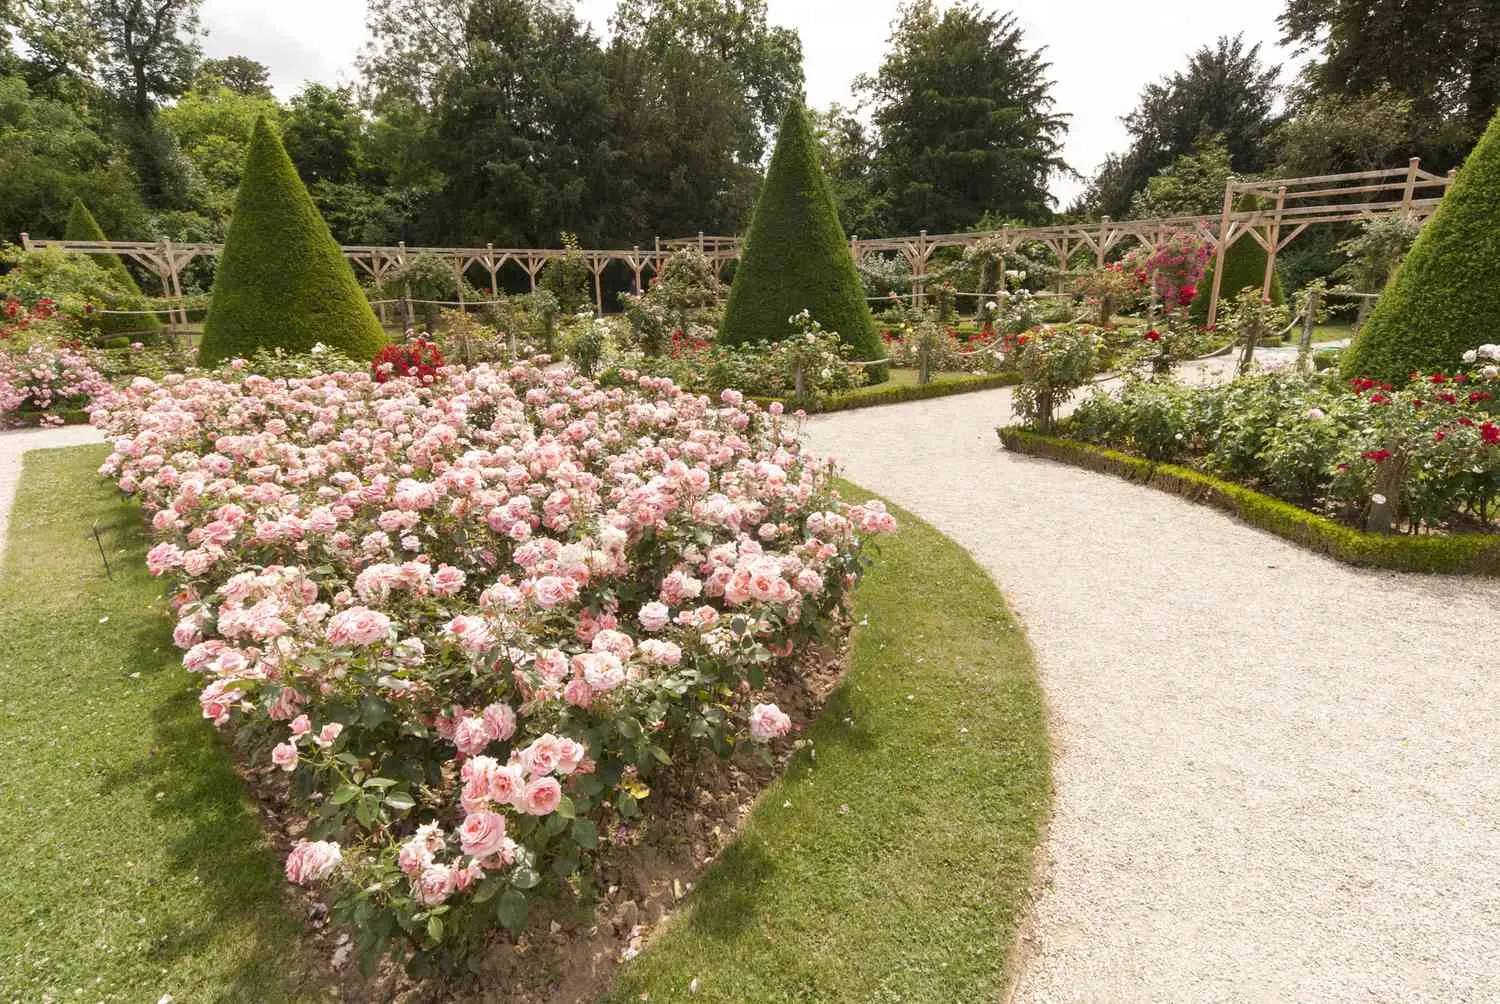 Sân vườn kiểu Pháp ngập trần sắc hoa